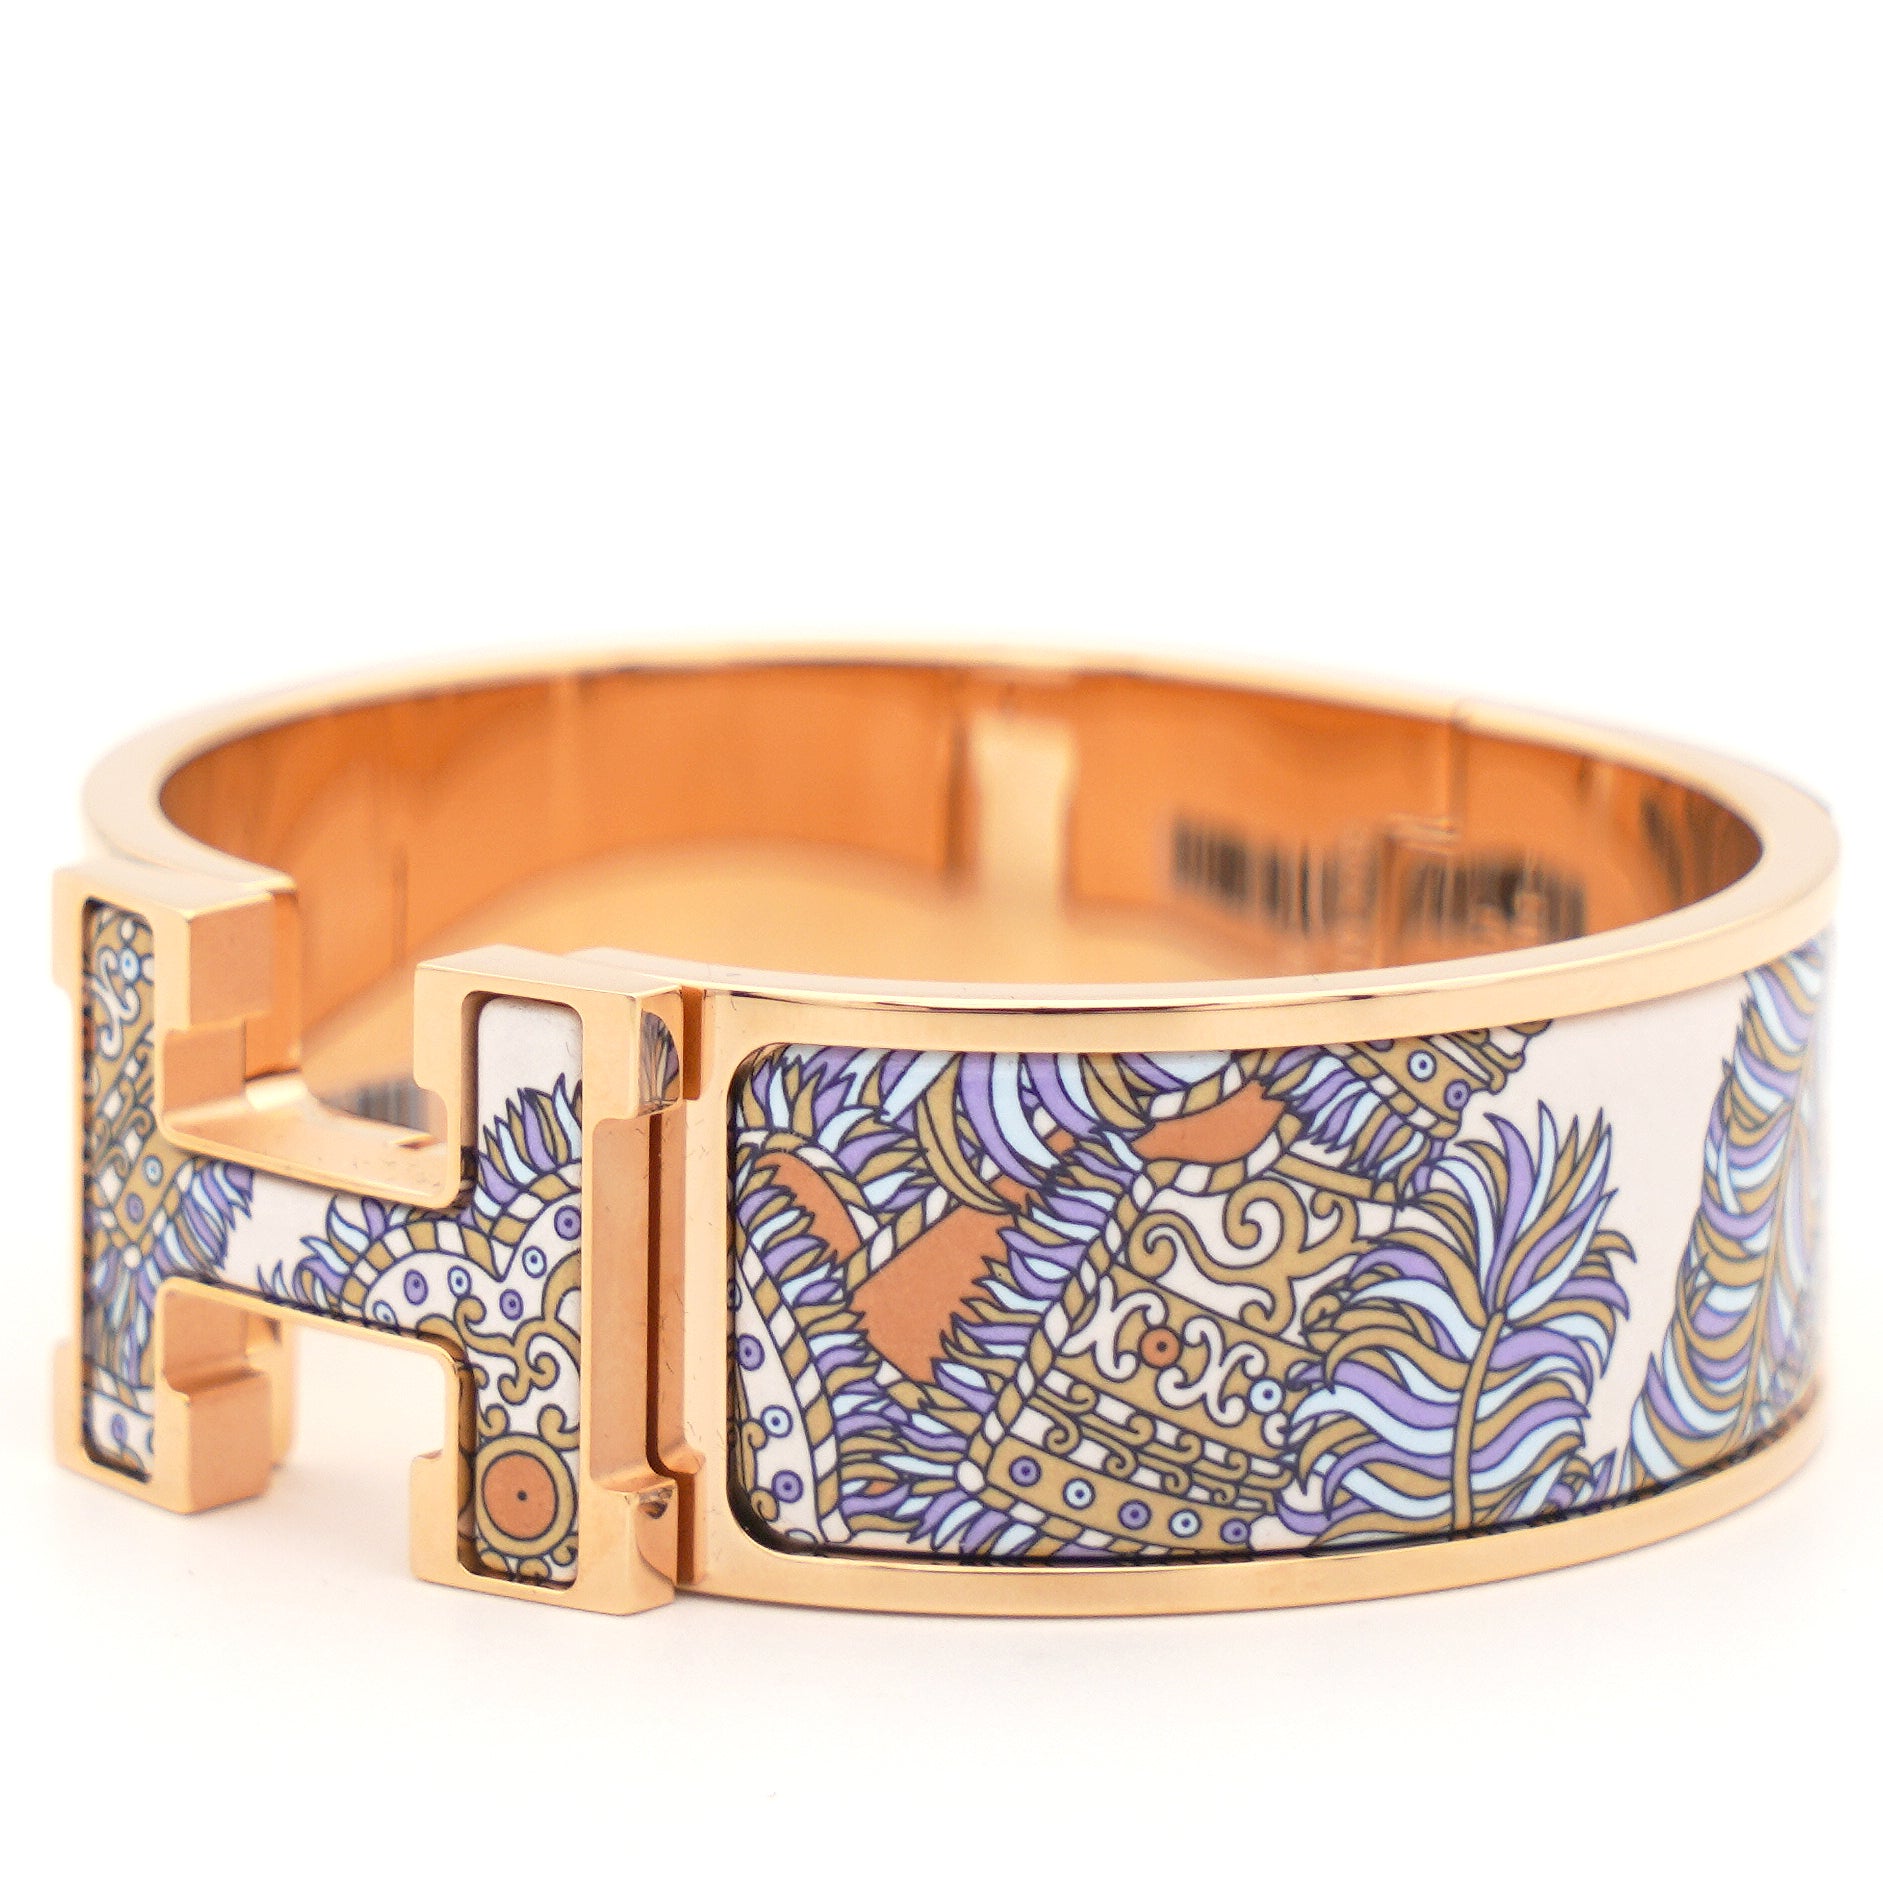 Hermes Clic Clac Bracelet Review - Lollipuff